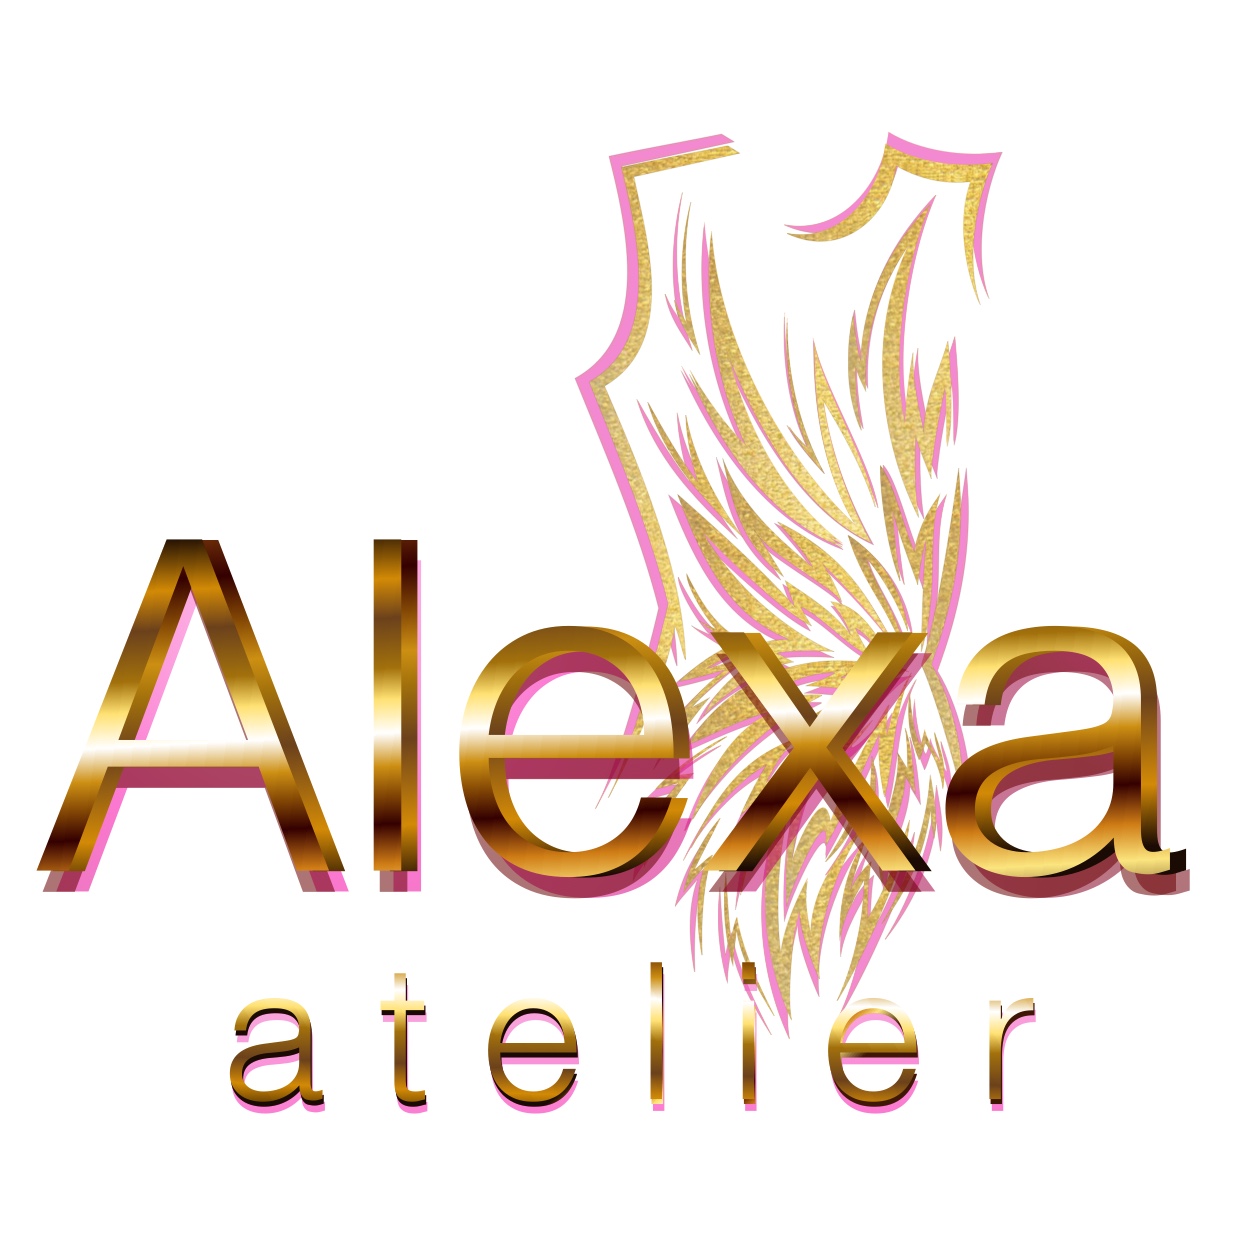 Alexa Atelier